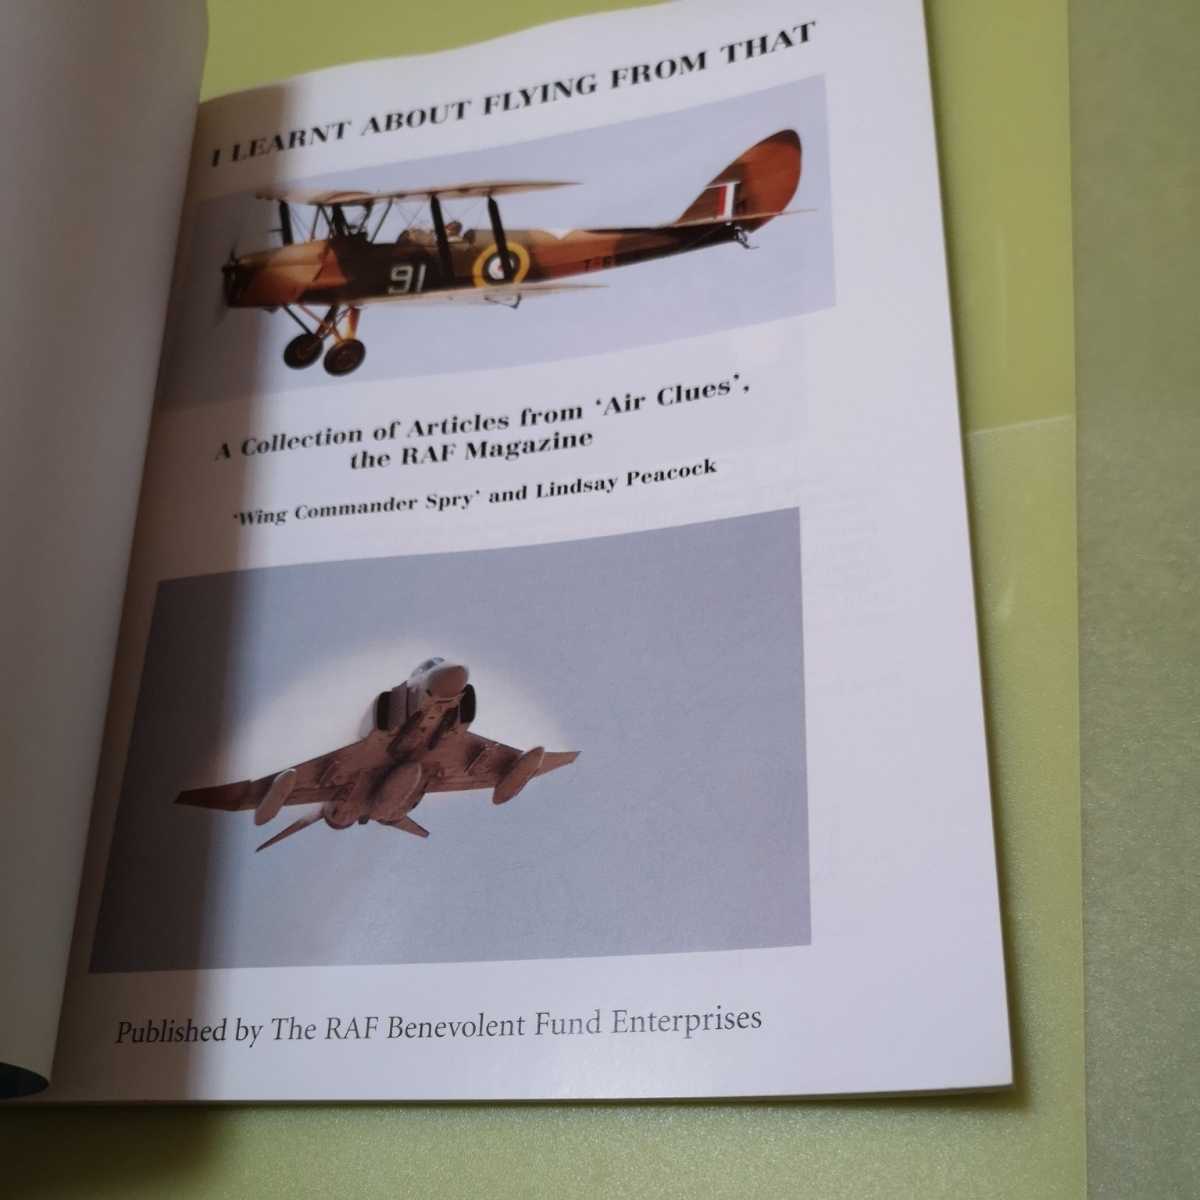 ◎航空機関連の英語本　I Learnt about Flying from That: Collection of Articles from Air Clues, the RAF Magazine英語版_画像3